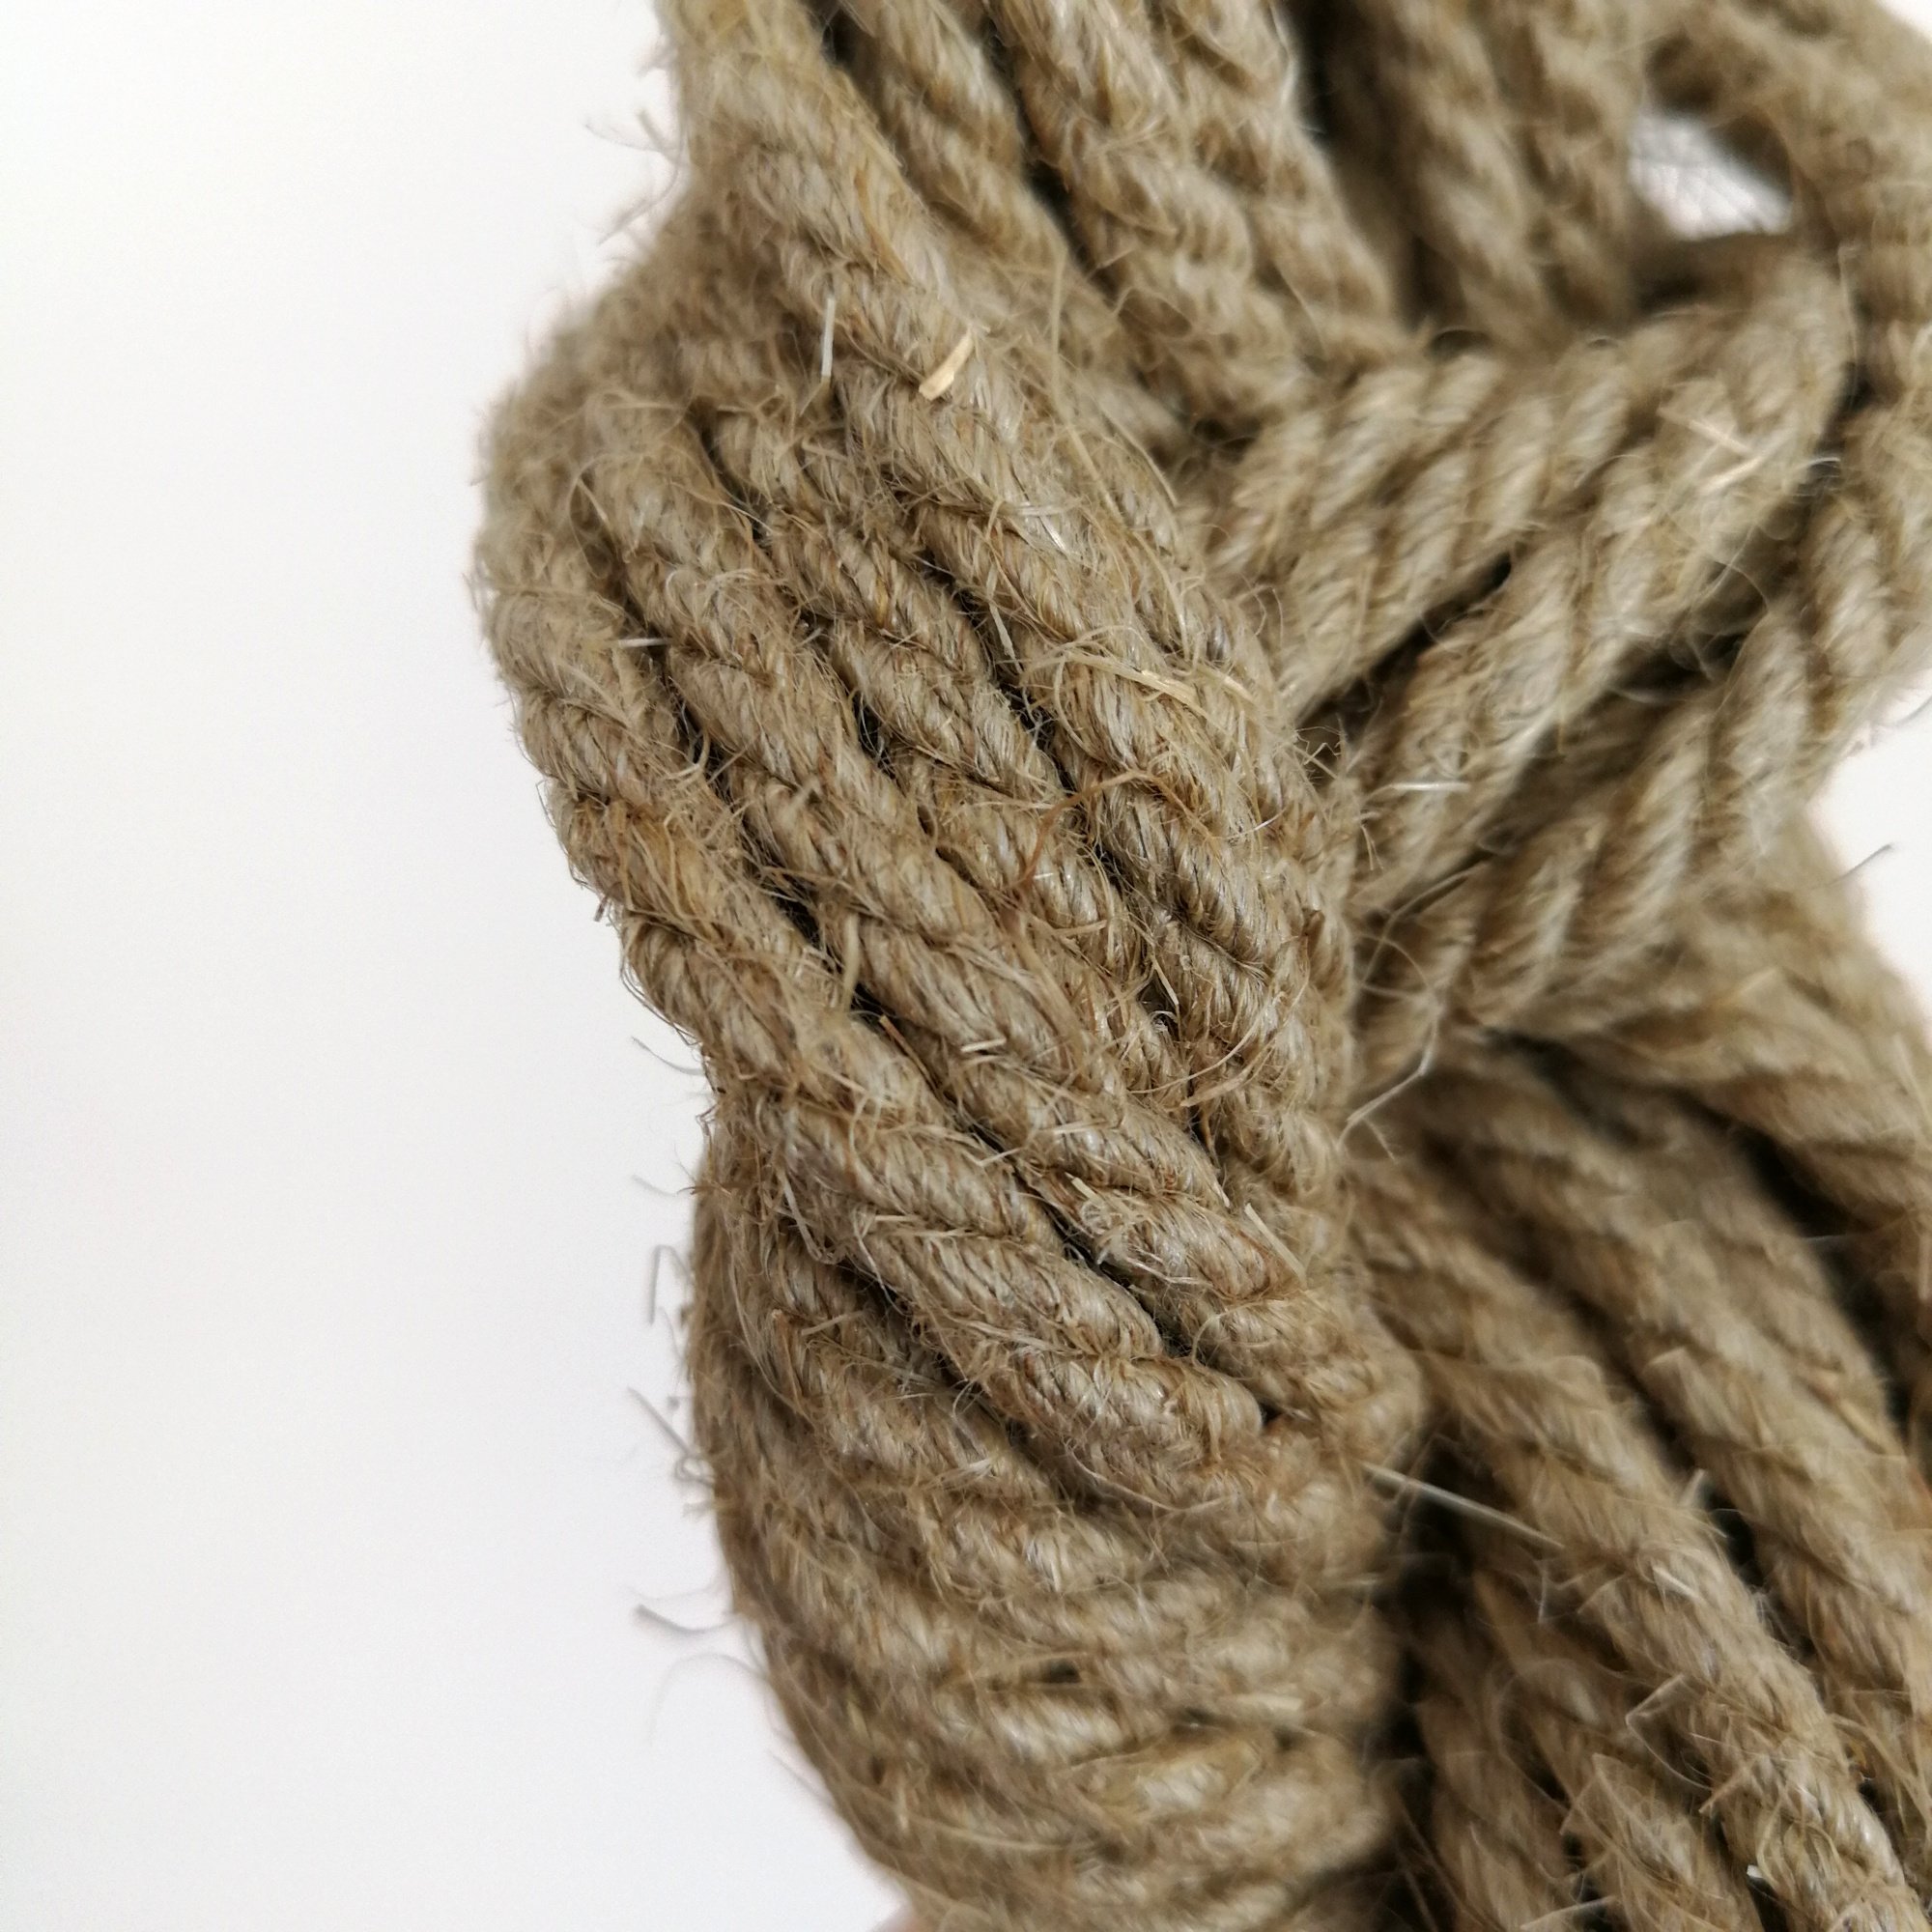 1-rope.jpg